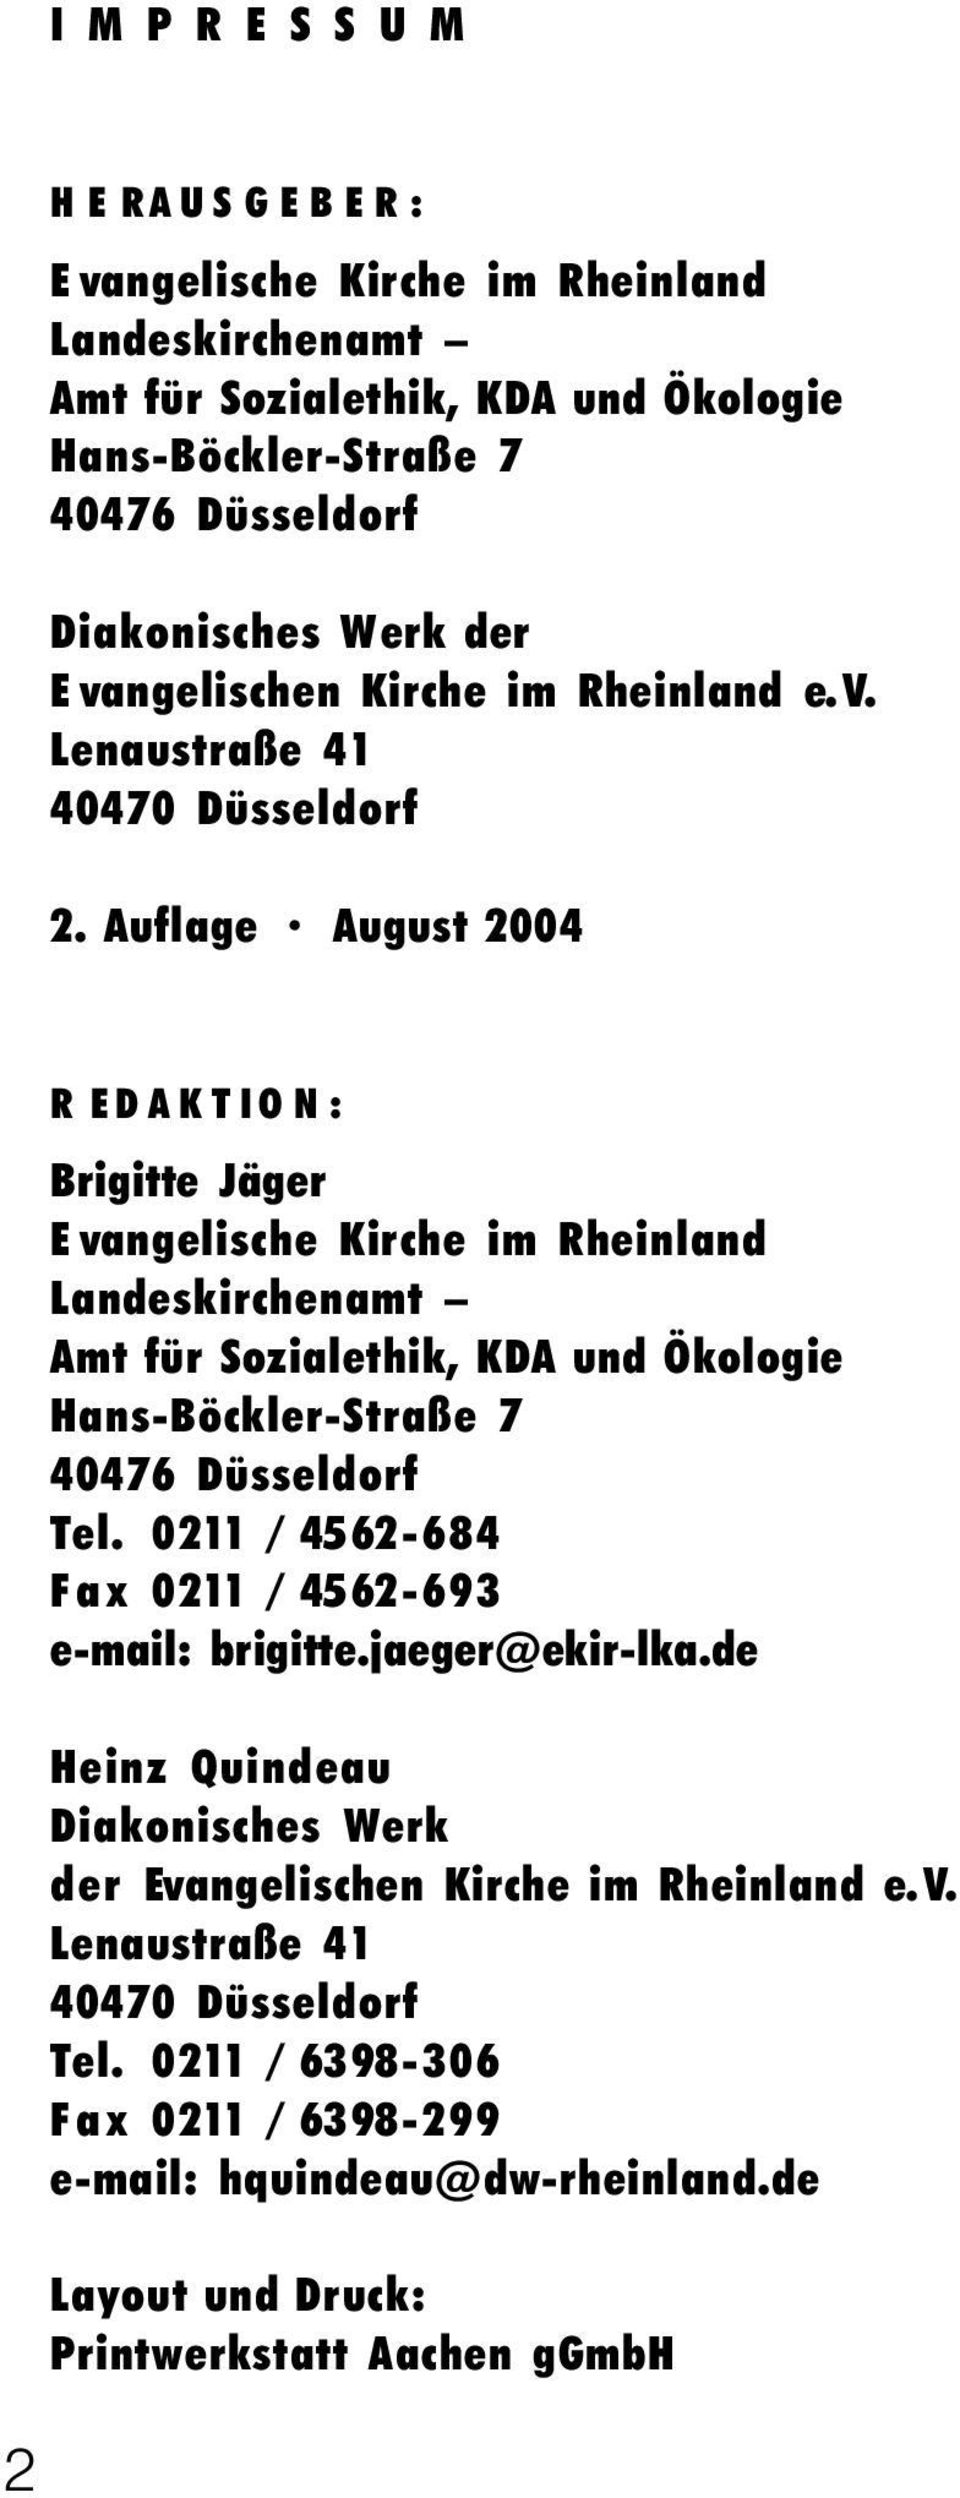 Aflage Agst 2004 2 R EDAKTION: Brigitte Jäger E vangelische Kirche im Rheinland Landeskirchenamt Amt für Sozialethik, KDA nd Ökologie Hans-Böckler-Straße 7 40476 Düsseldorf Tel.